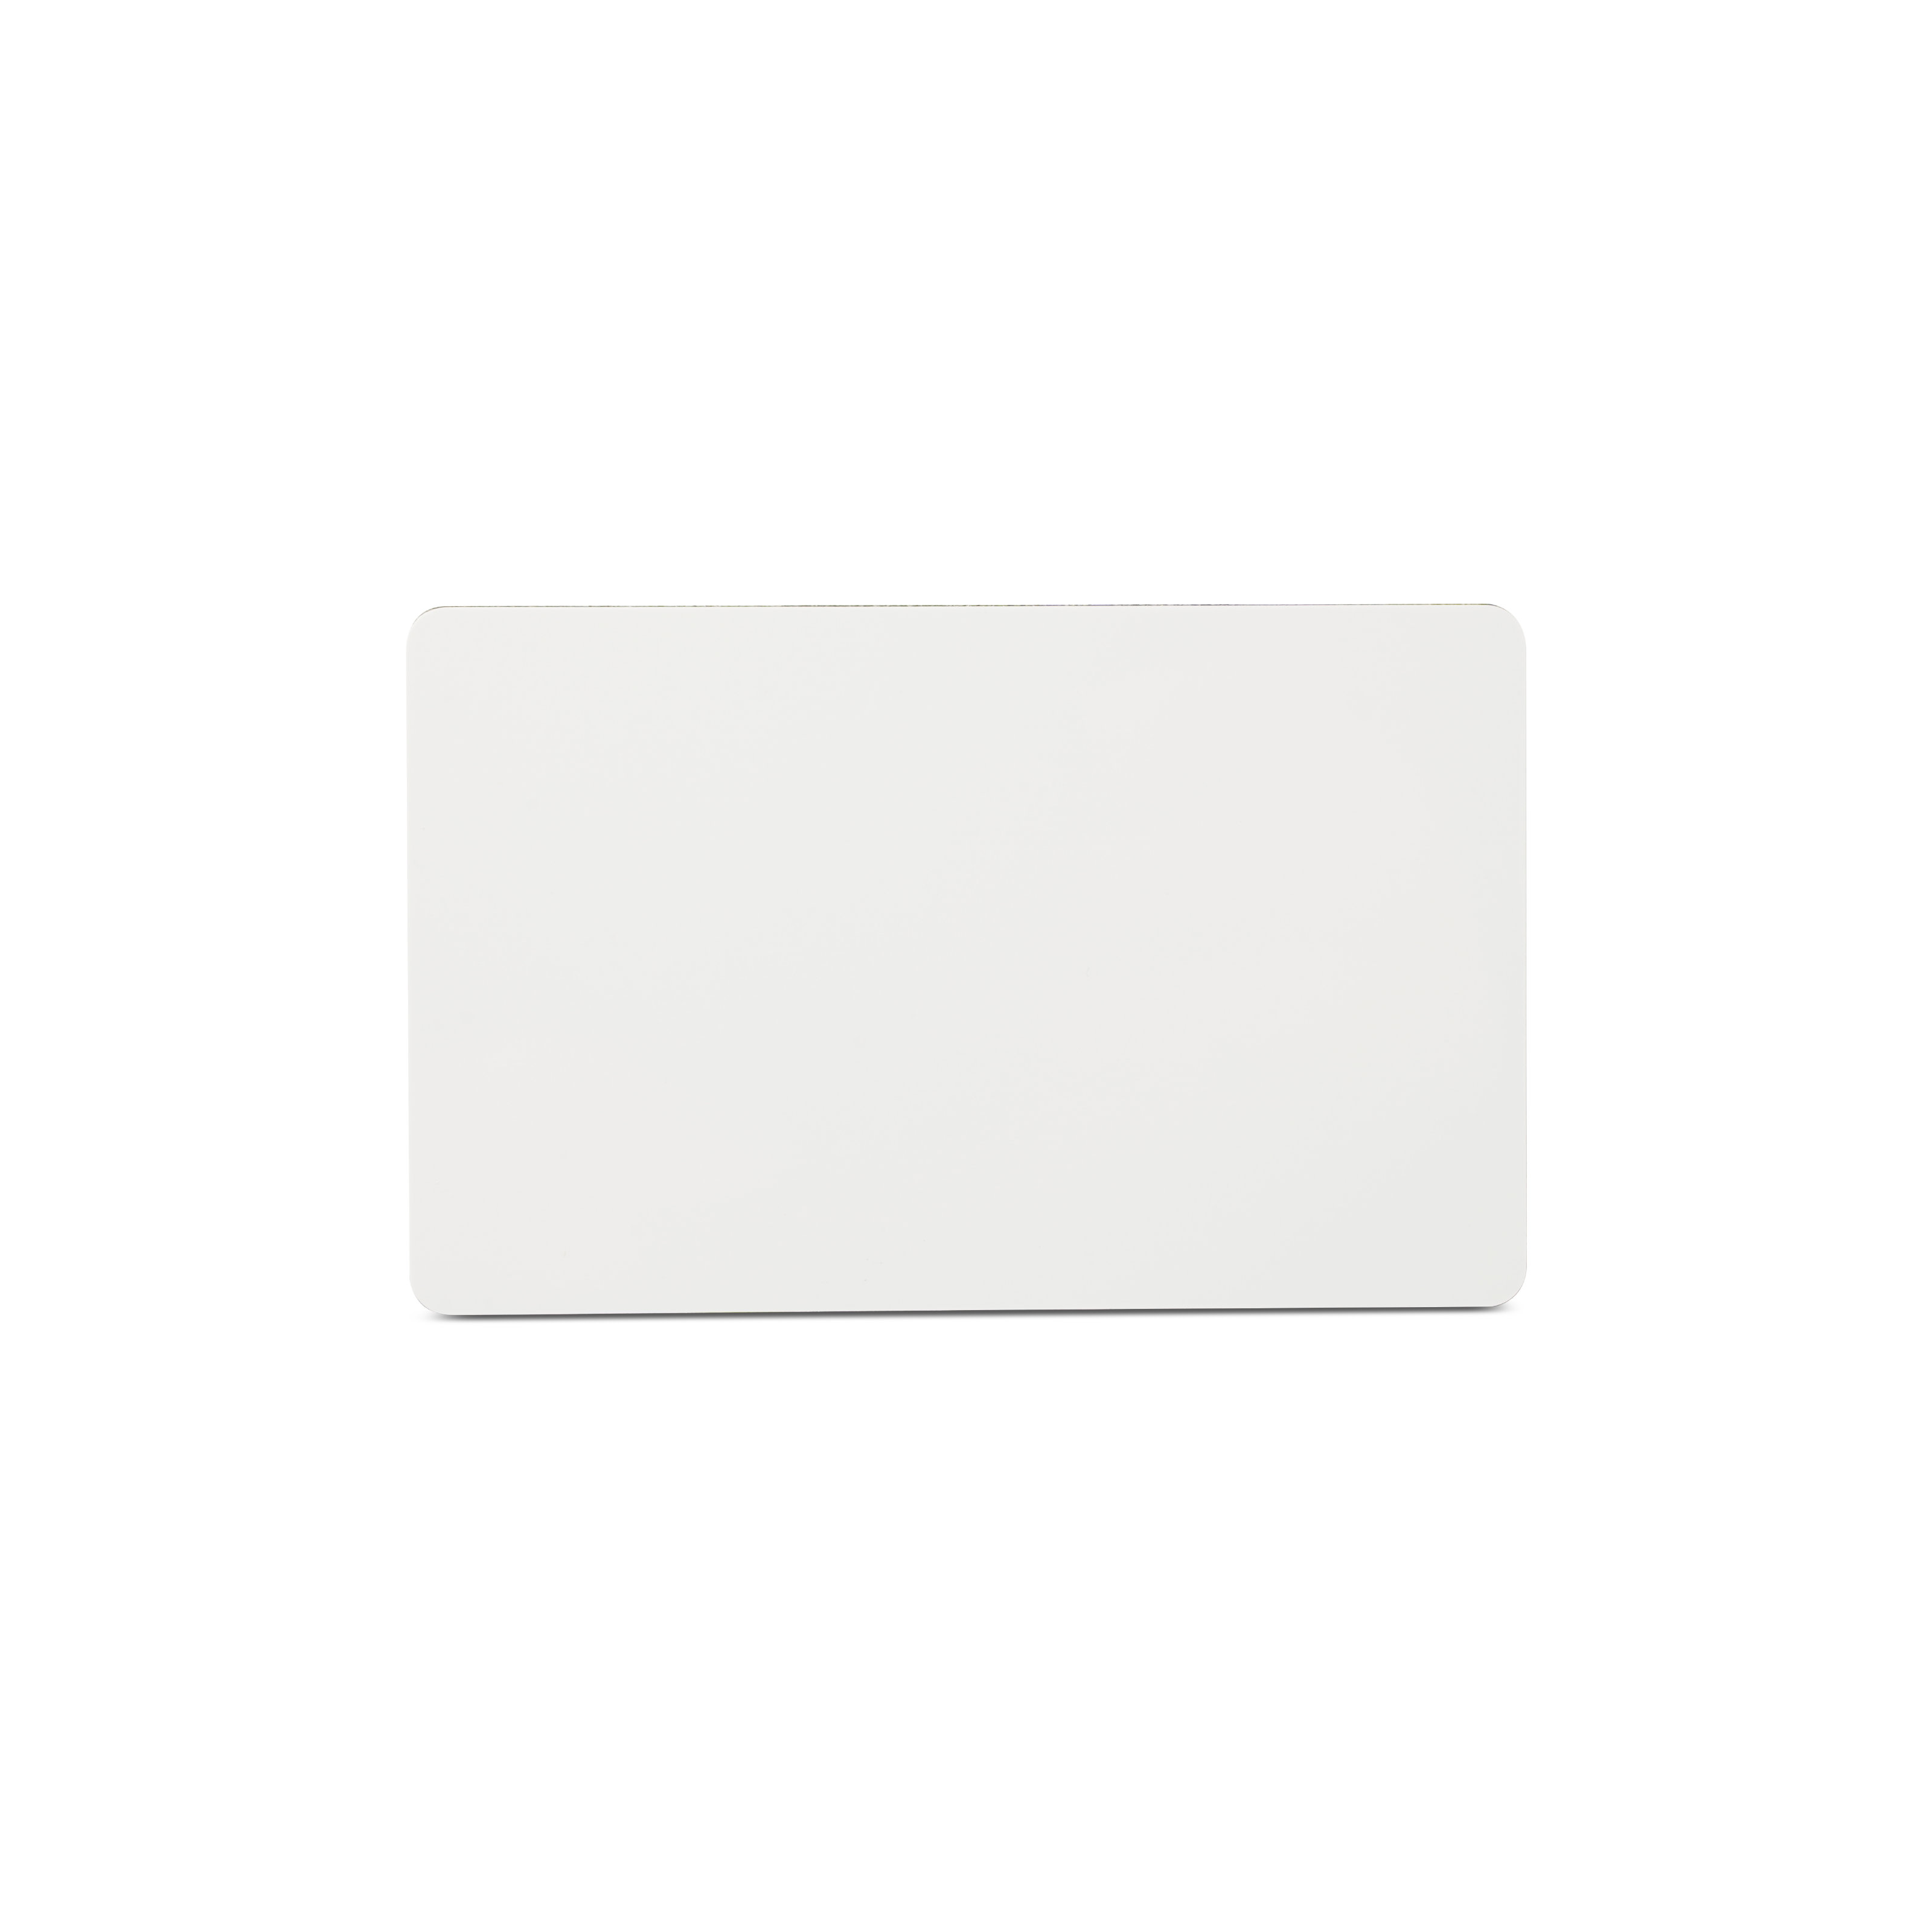 NFC Karte PVC - On-Metal - 85,6 x 54 mm - NTAG216 - 924 Byte - weiß - mit 3M Klebeschicht